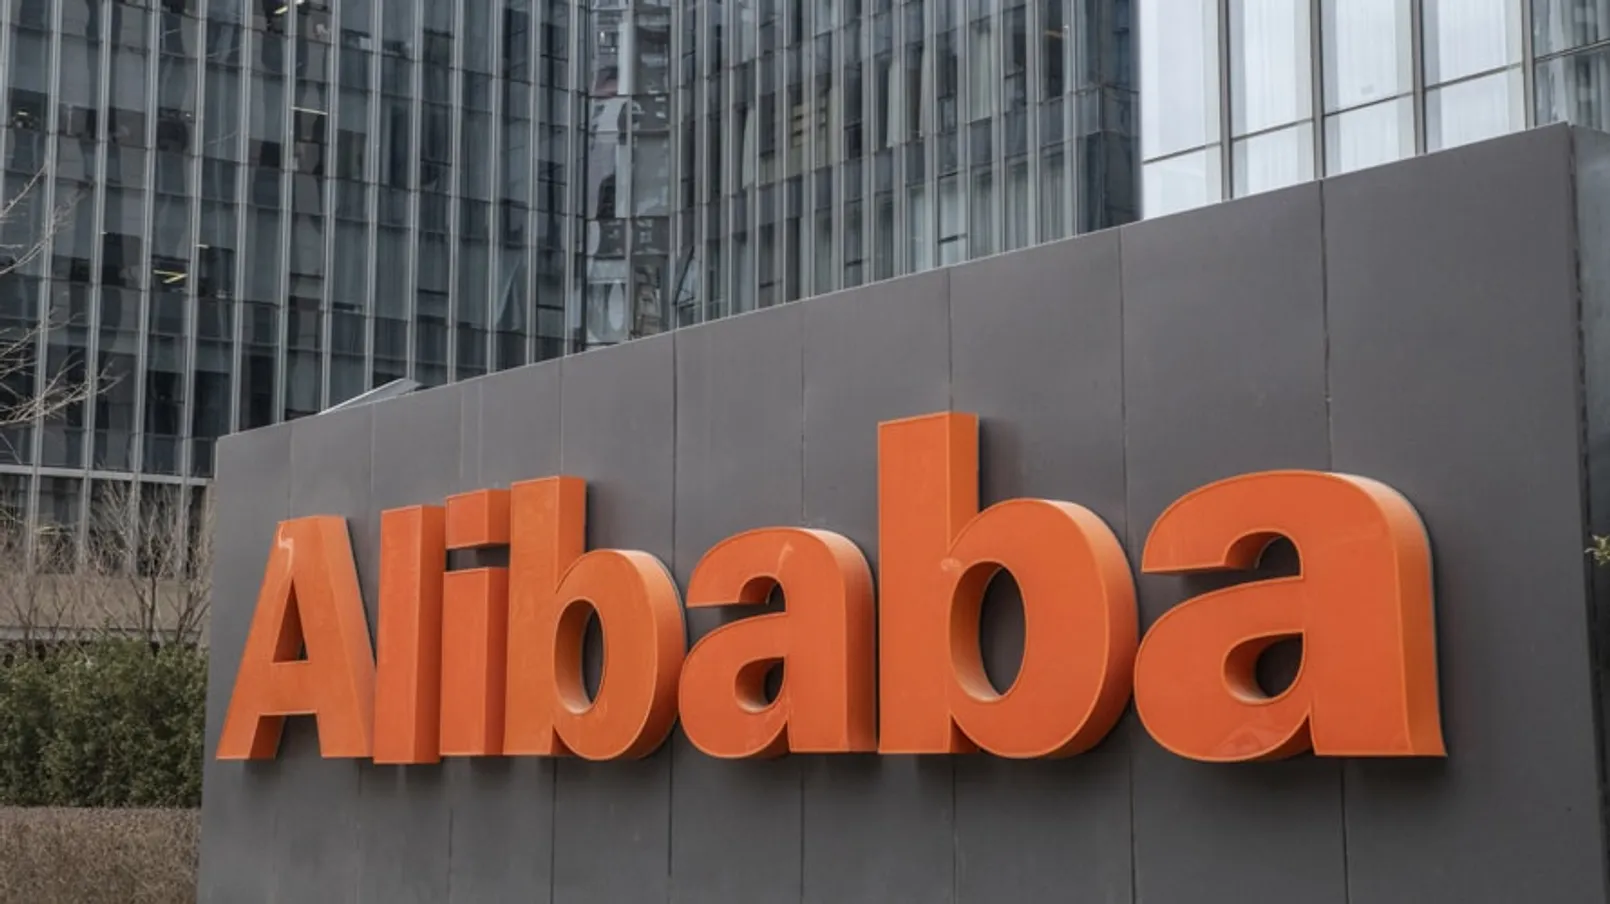 Alibaba Smb Content 2019.jpeg